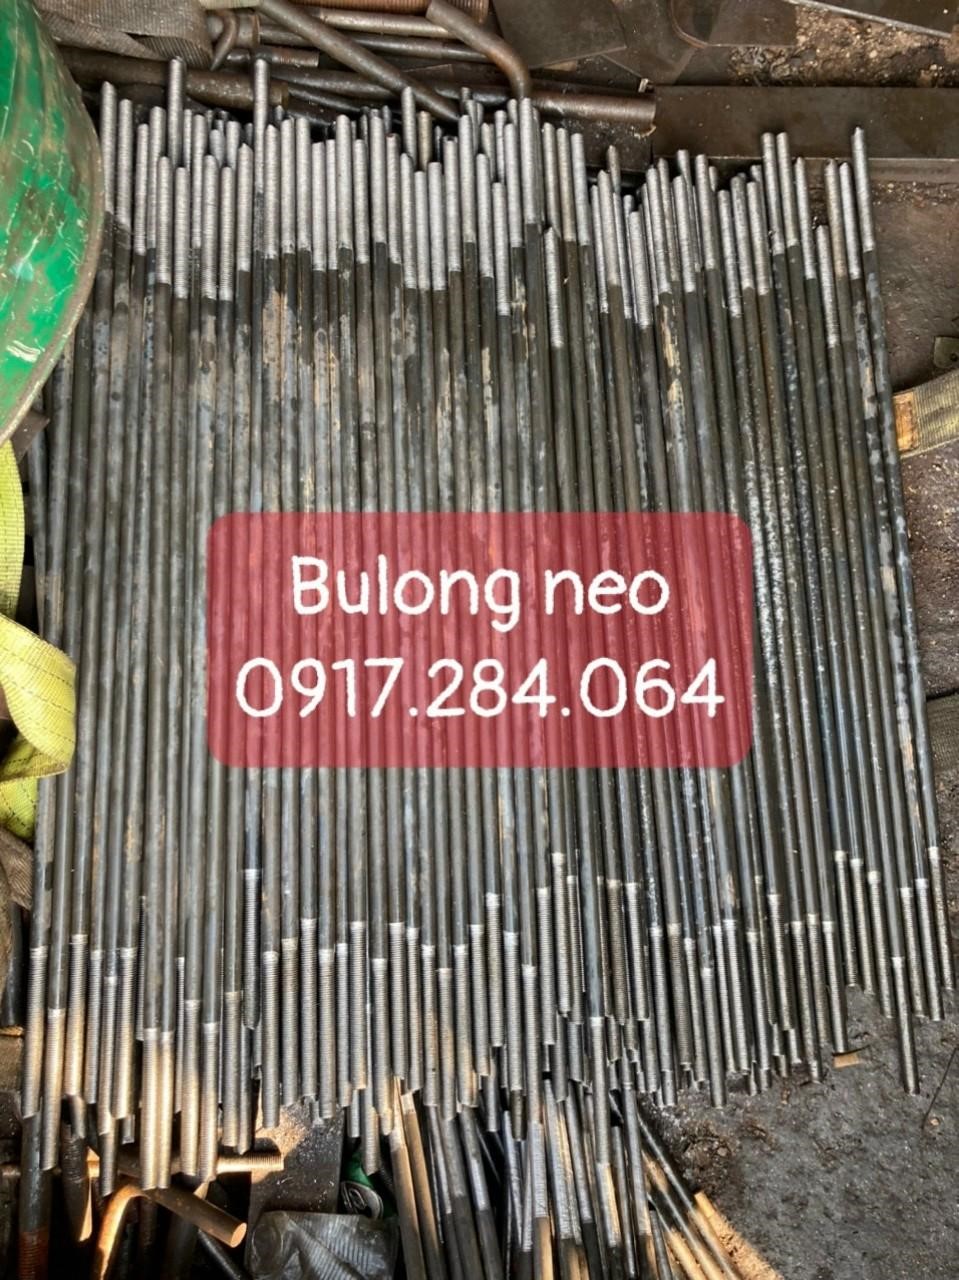 Bulong Neo, Cơ khí Sao Việt, công trình xây dựng, Bàn giao Bulong Neo, bulong, bulong hàng xi, đặt bulong neo theo yêu cầu, gia công bulong neo